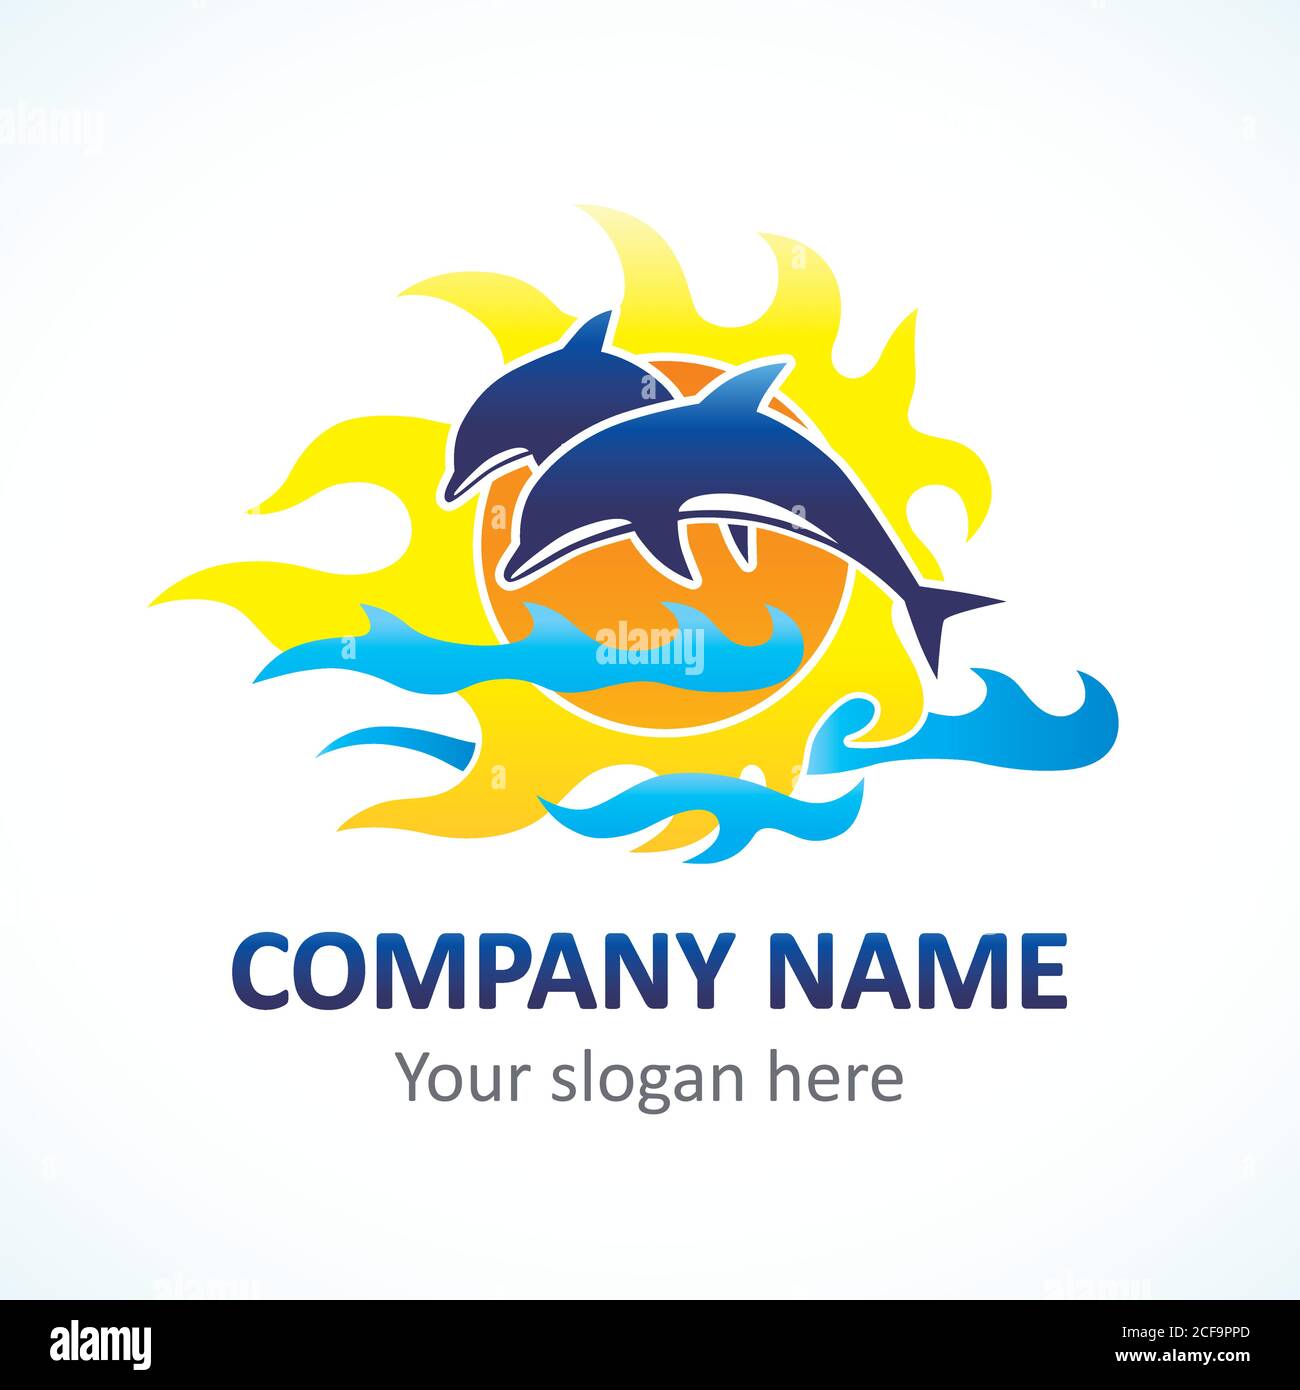 Delphin, Seelinie und Flamme Sonnenlicht Vektor-Logo. Branding Identität von touristischen Unternehmen, Spa, Strand-Service, Resort oder Hotel am Meer Stock Vektor